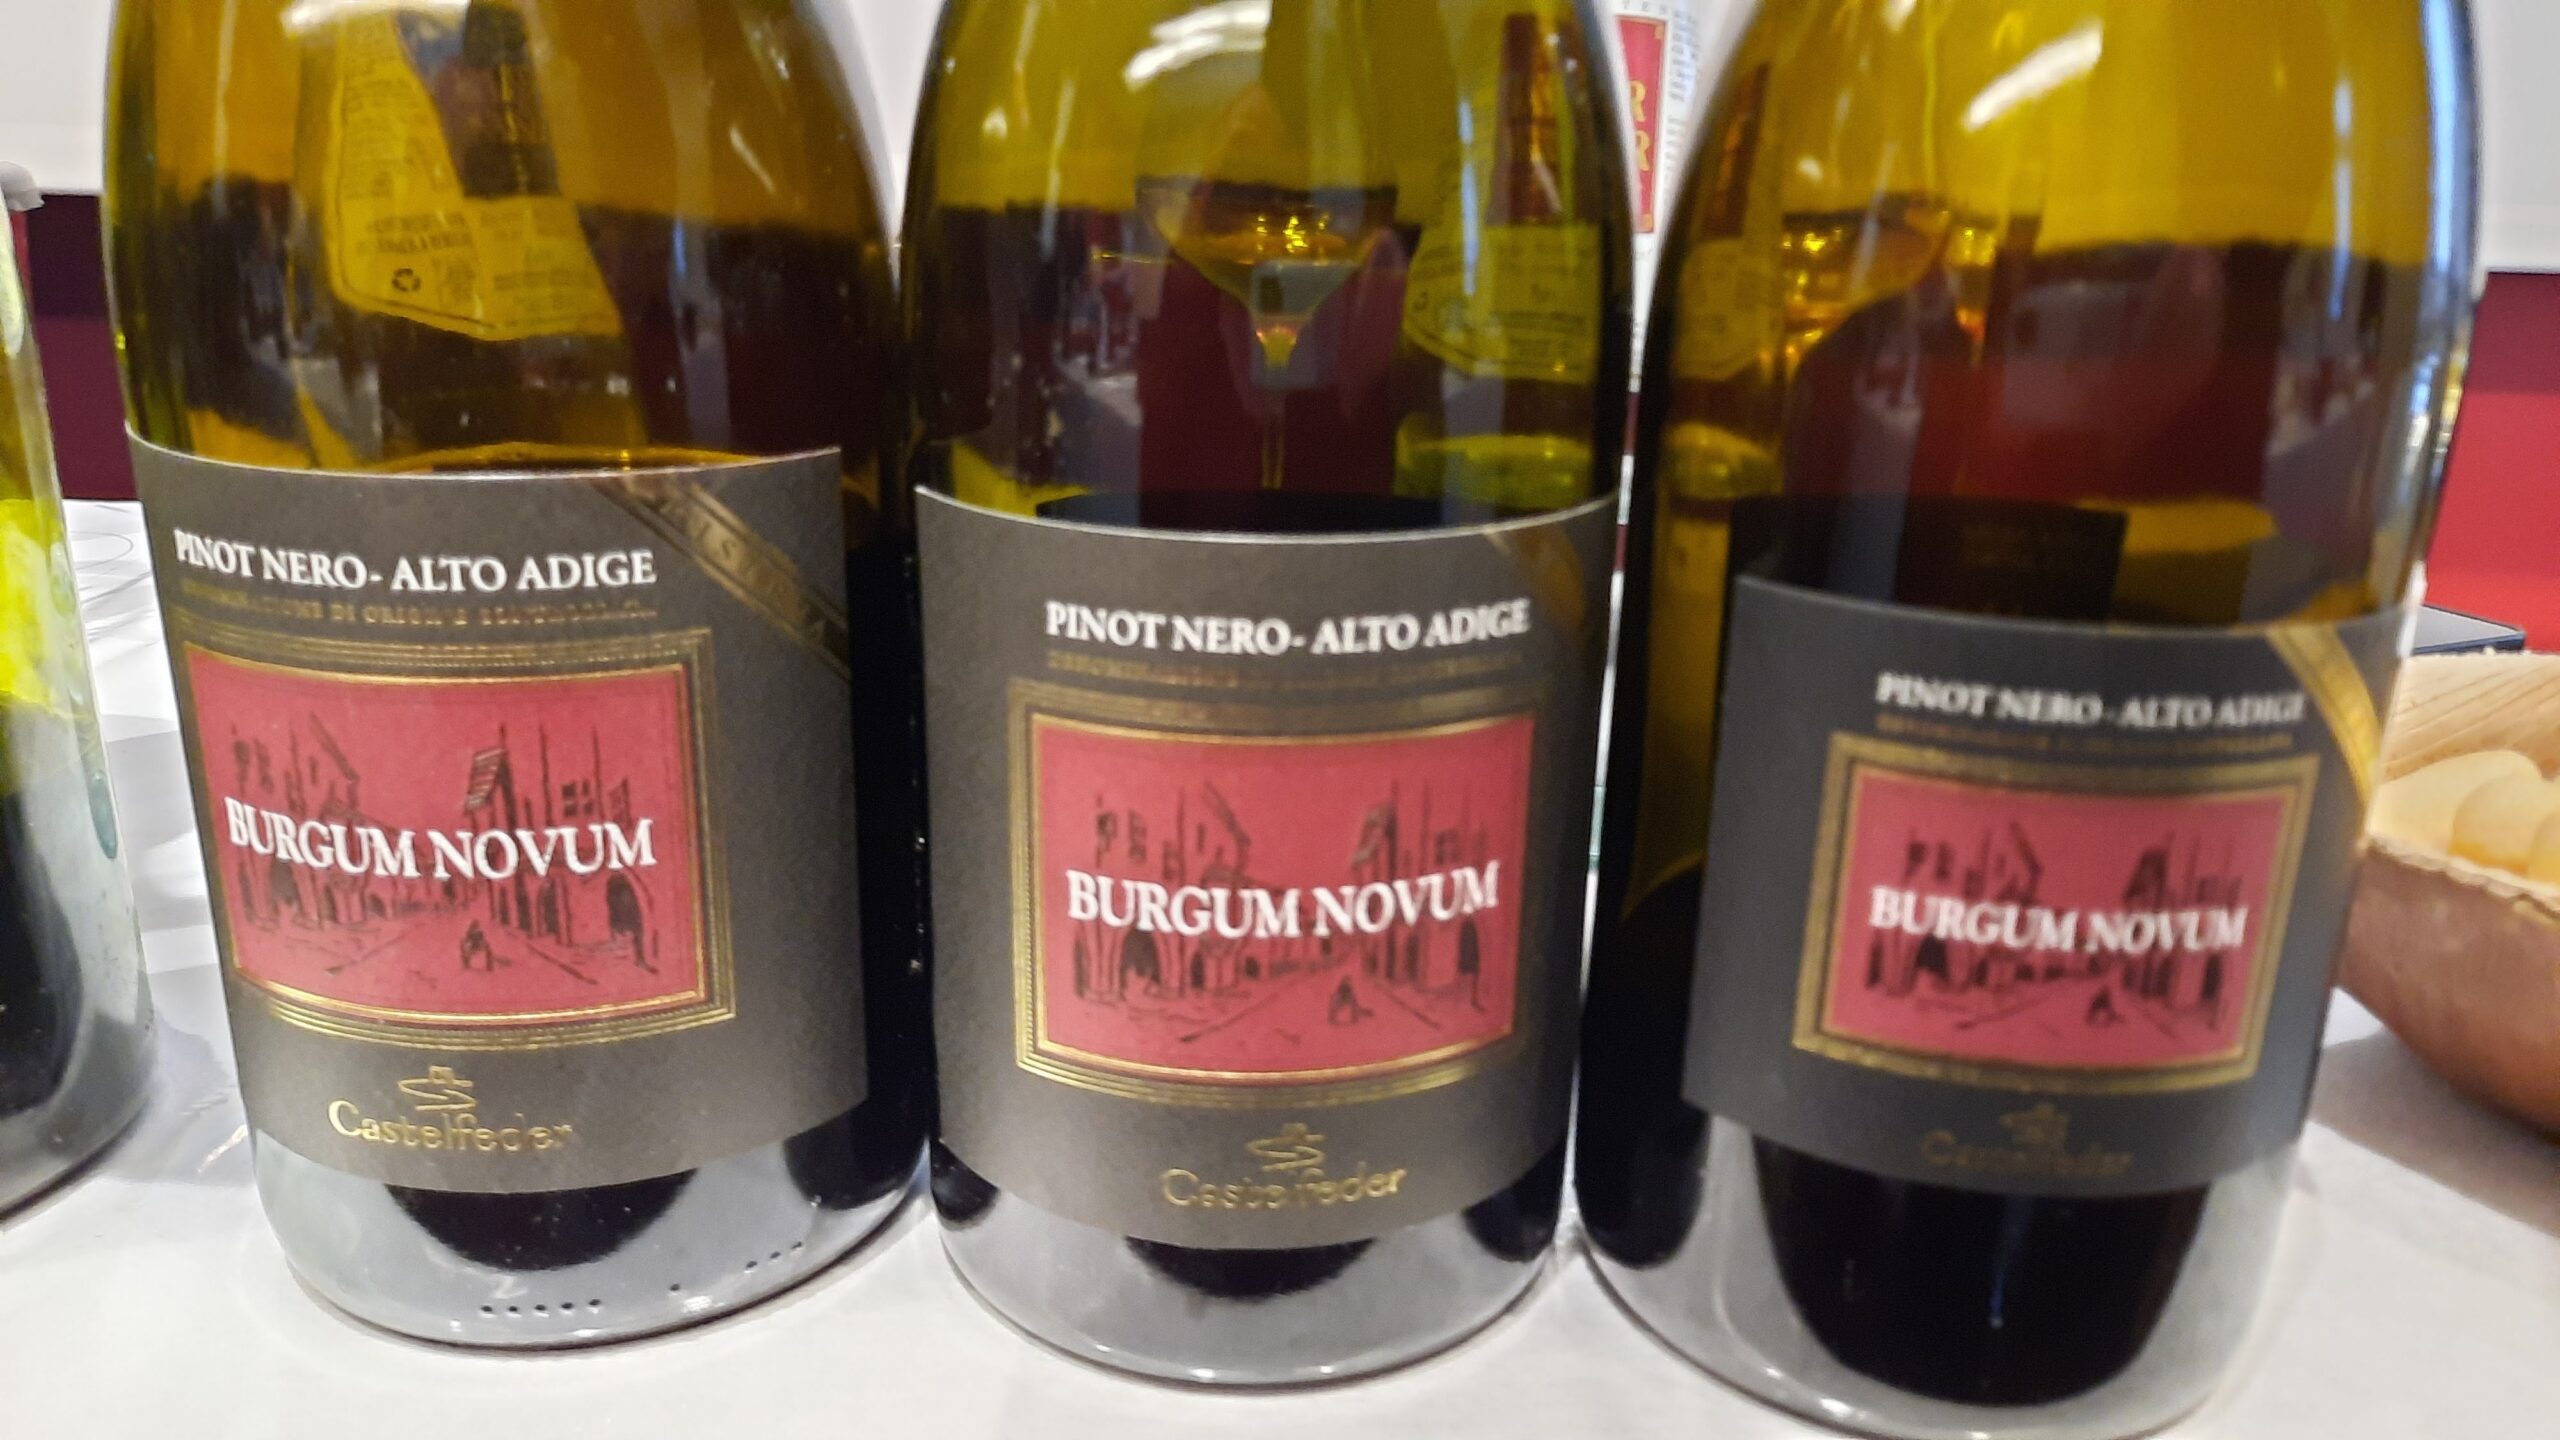 Pinot Nero Riserva Burgum Novum, articolo: Castelfeder e gli assaggi al Merano WineFestival 2023